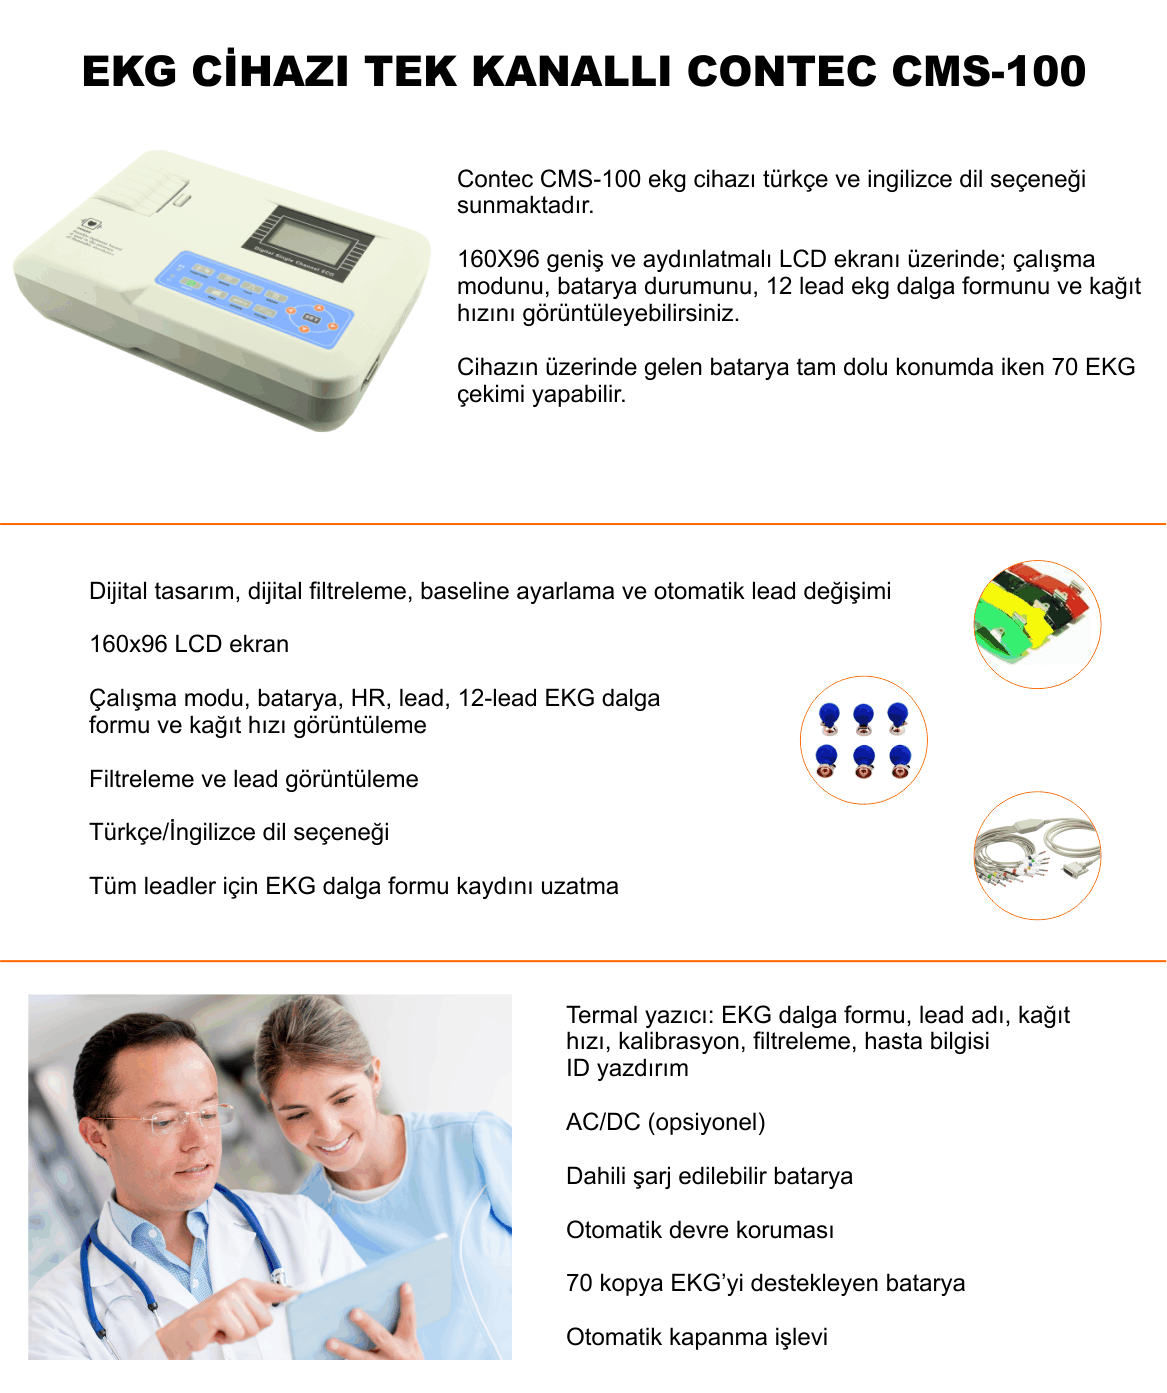 EKG CİHAZI TEK KANALLI CONTEC CMS-100 -sezermedikalcom